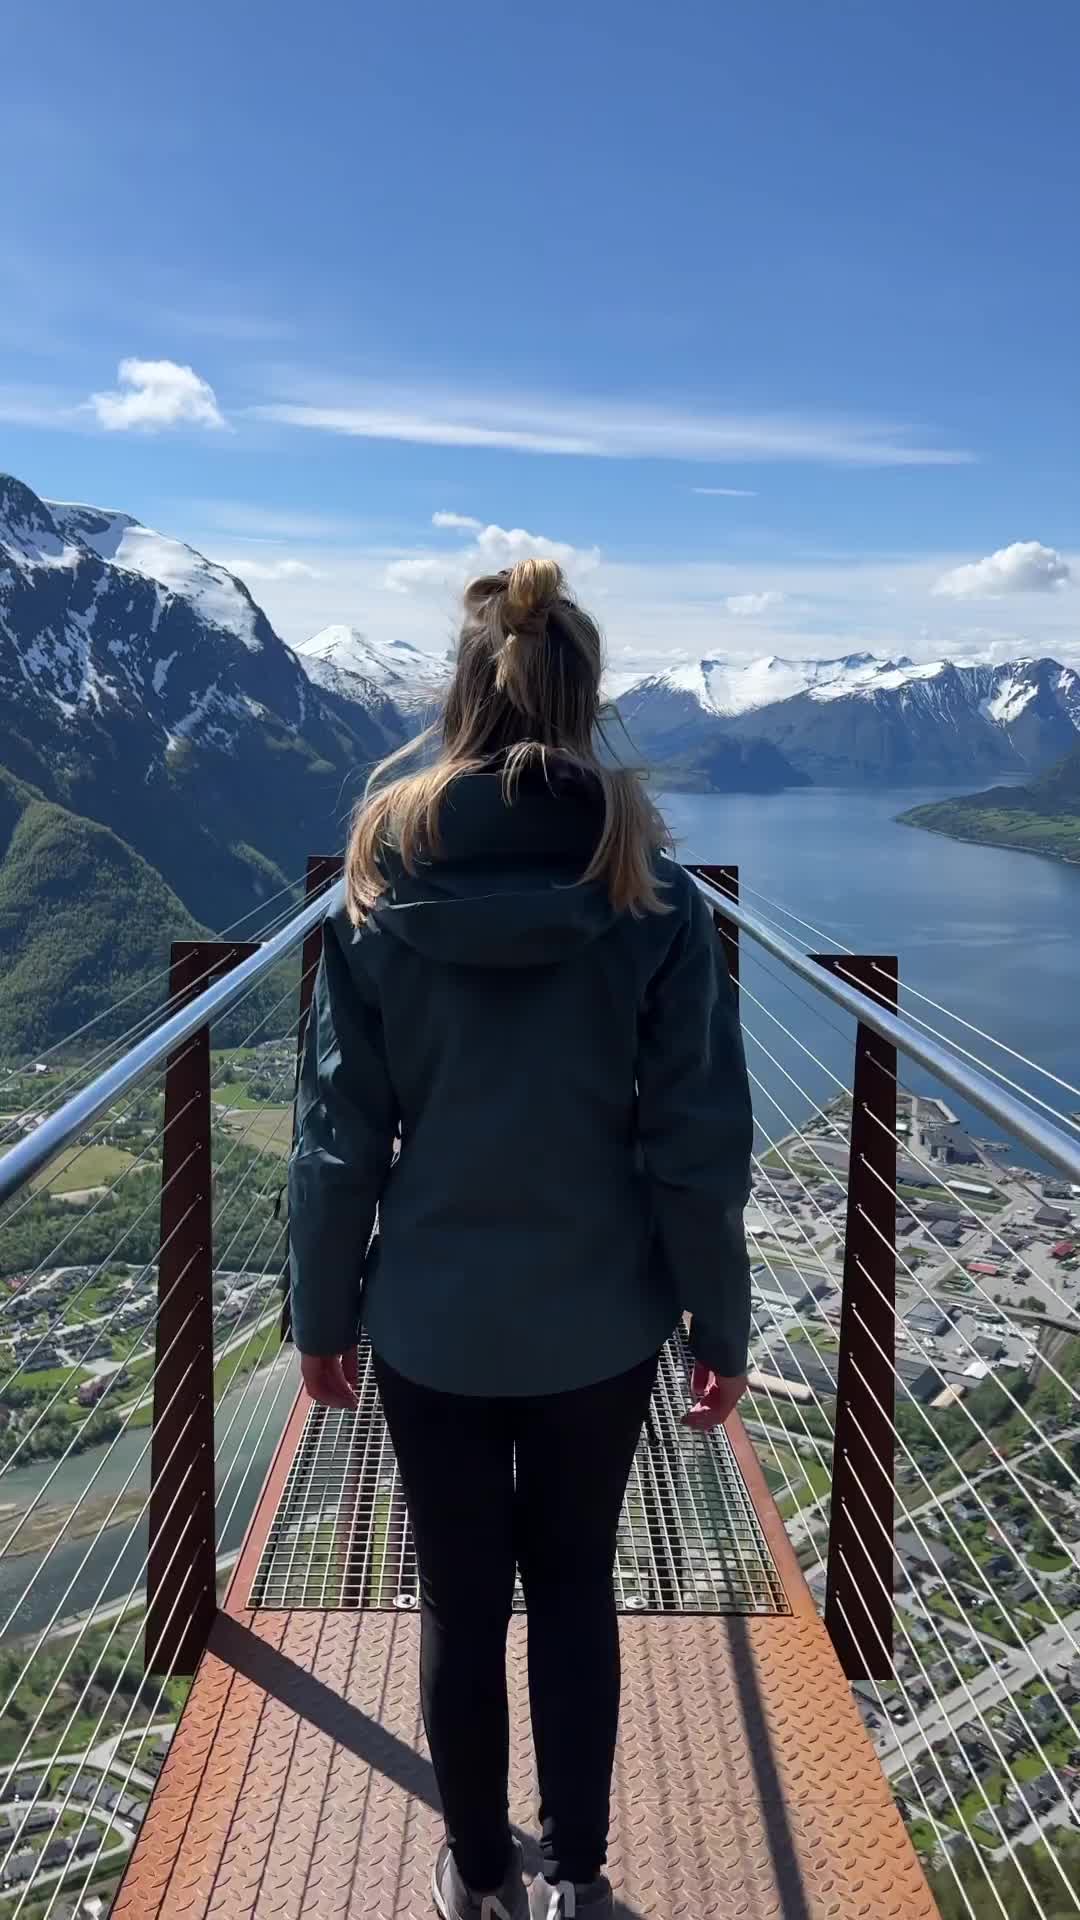 Stunning Views from Rampestreken Viewpoint, Norway